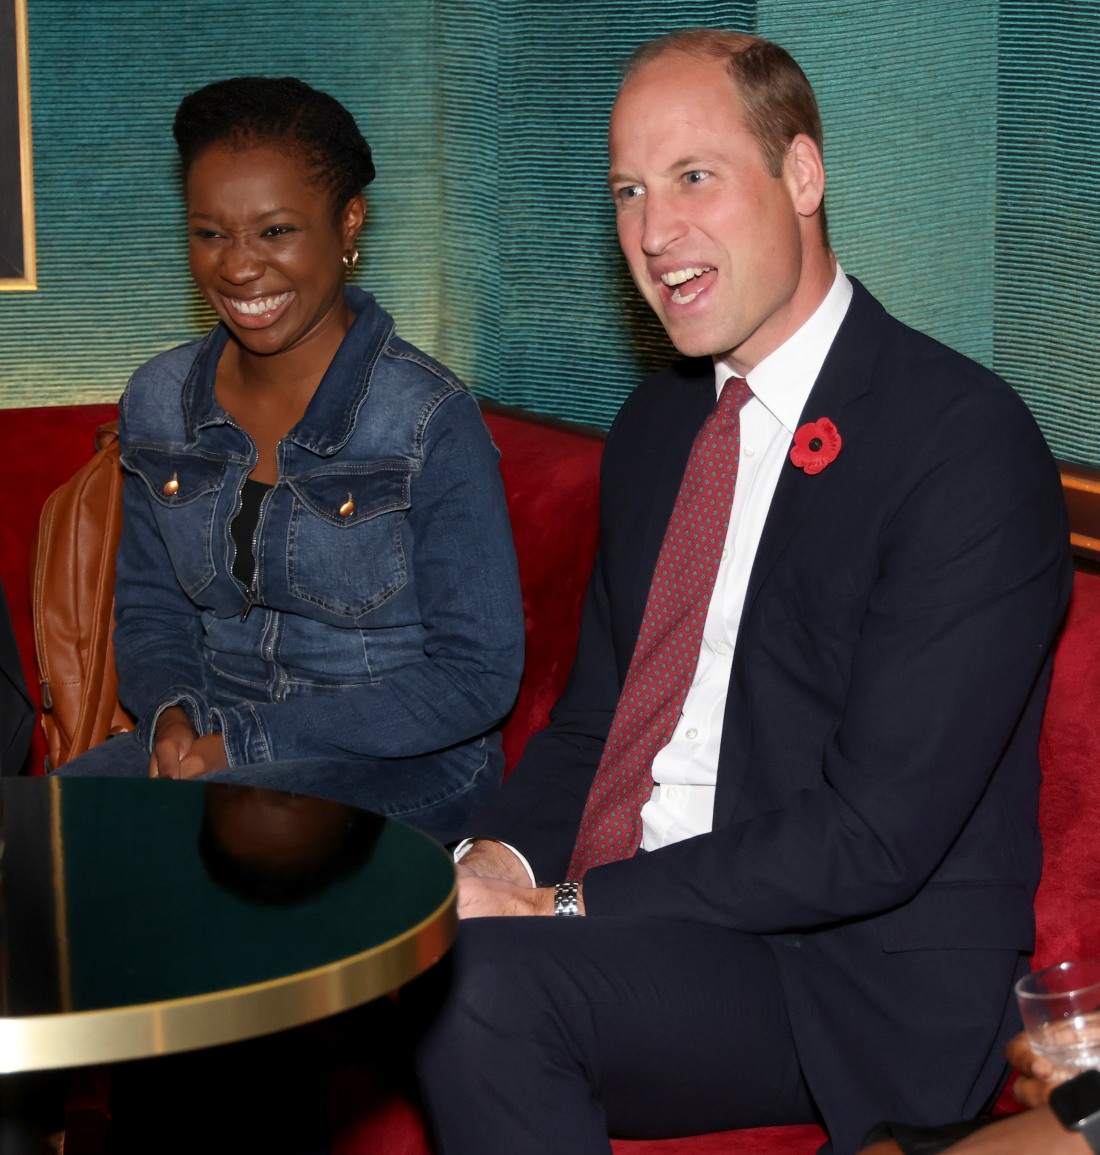 kaltak | Afrika filmi için düzenlenen bir etkinlikte Prens William'a 'Netflix ve sakin ol' denildi